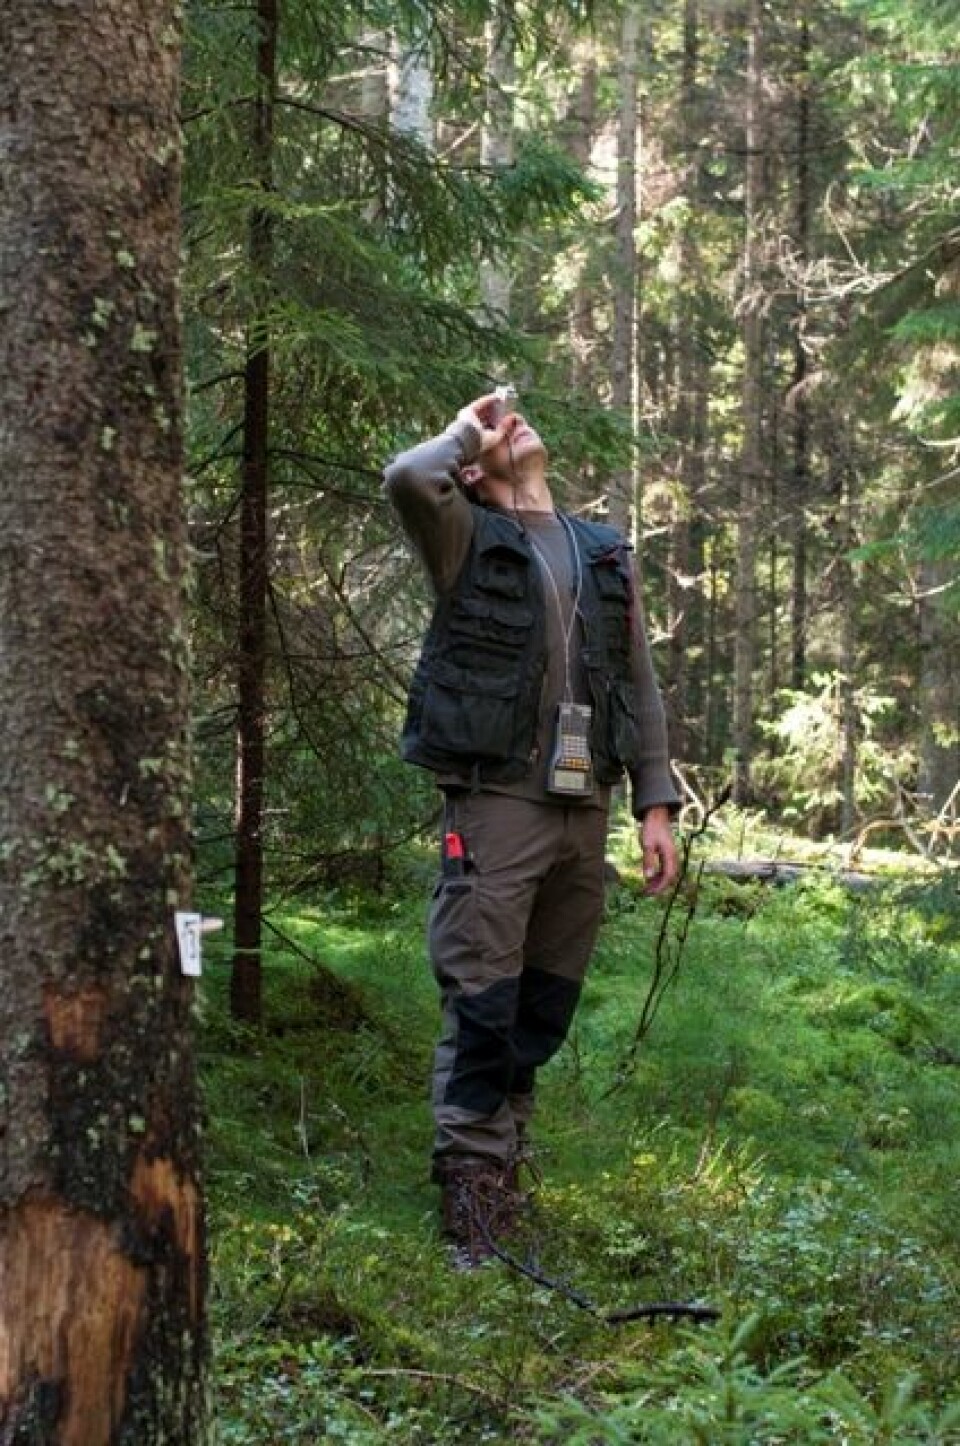 Feltleder Knut Ole Viken fra Skog og landskap måler høyden på et tre i forbindelse på en av Landsskogtakseringens flater. (Foto: Lars Sandved Dalen/Skog og landskap)